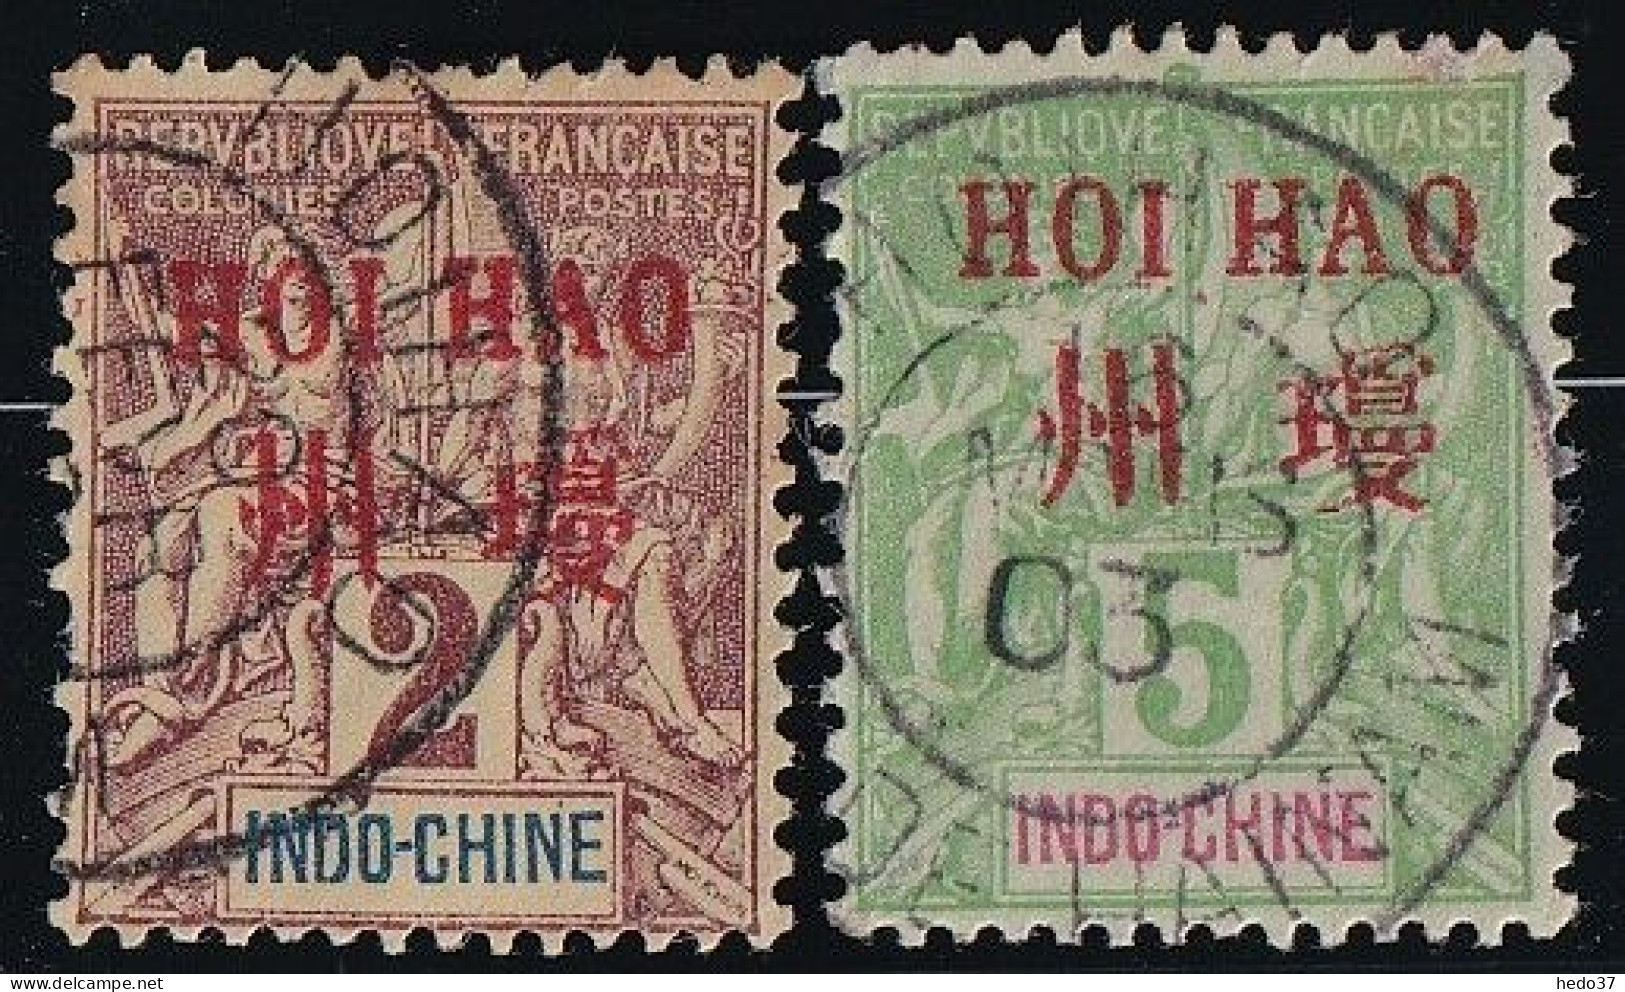 Hoï-Hao N°2 & 4 - Oblitéré - TB - Used Stamps